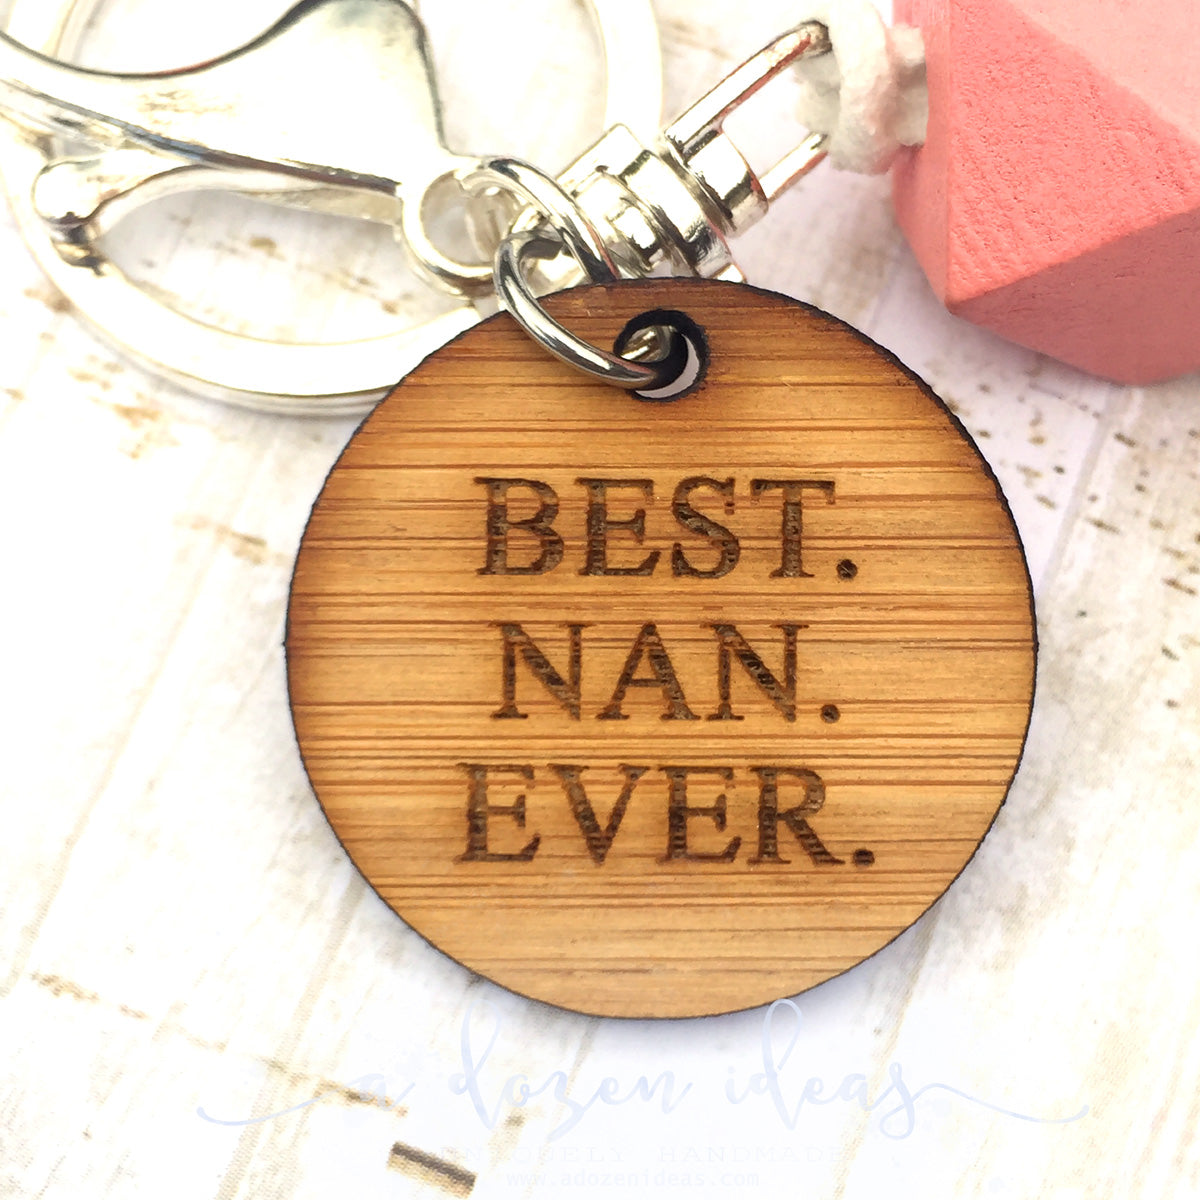 Add-on - Best. Nan. Ever